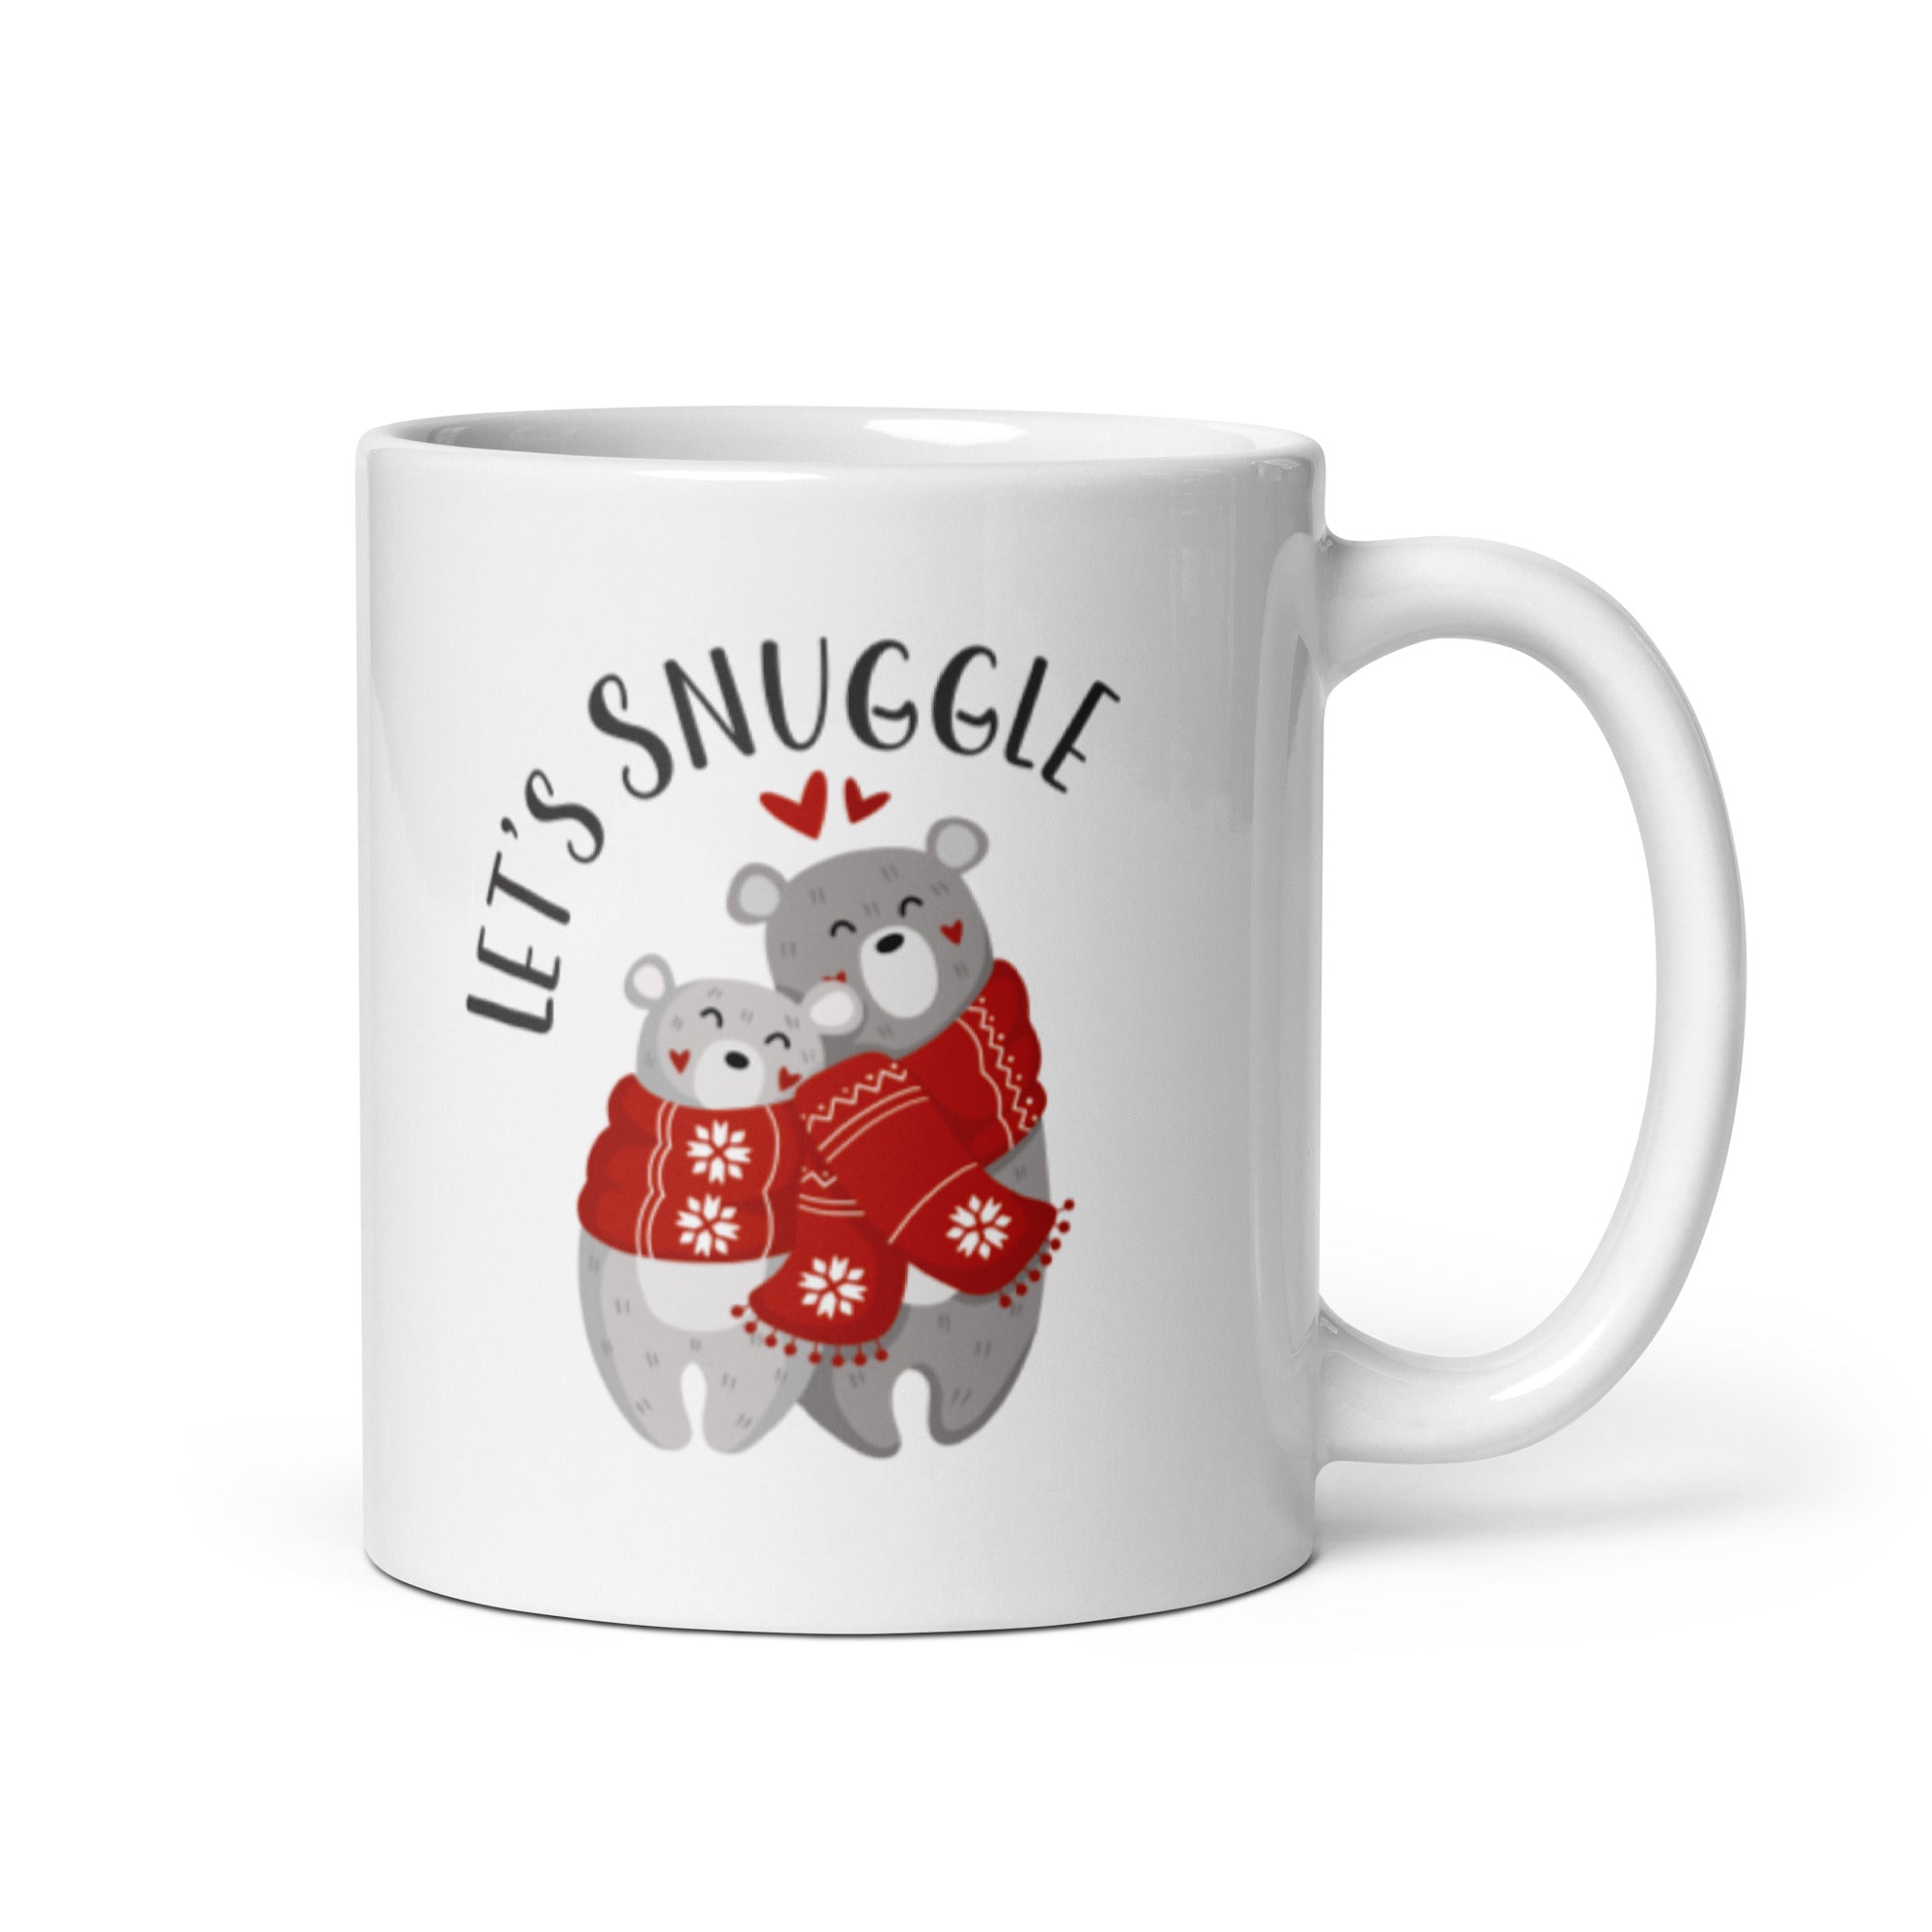 Snuggle up and Keep Warm Mug, Snuggle Season Mug, Big 15 Ounce Mug, Holiday  Christmas Mug, Fall Coffee Mug, Hot Chocolate Mug, Autumn Mug 